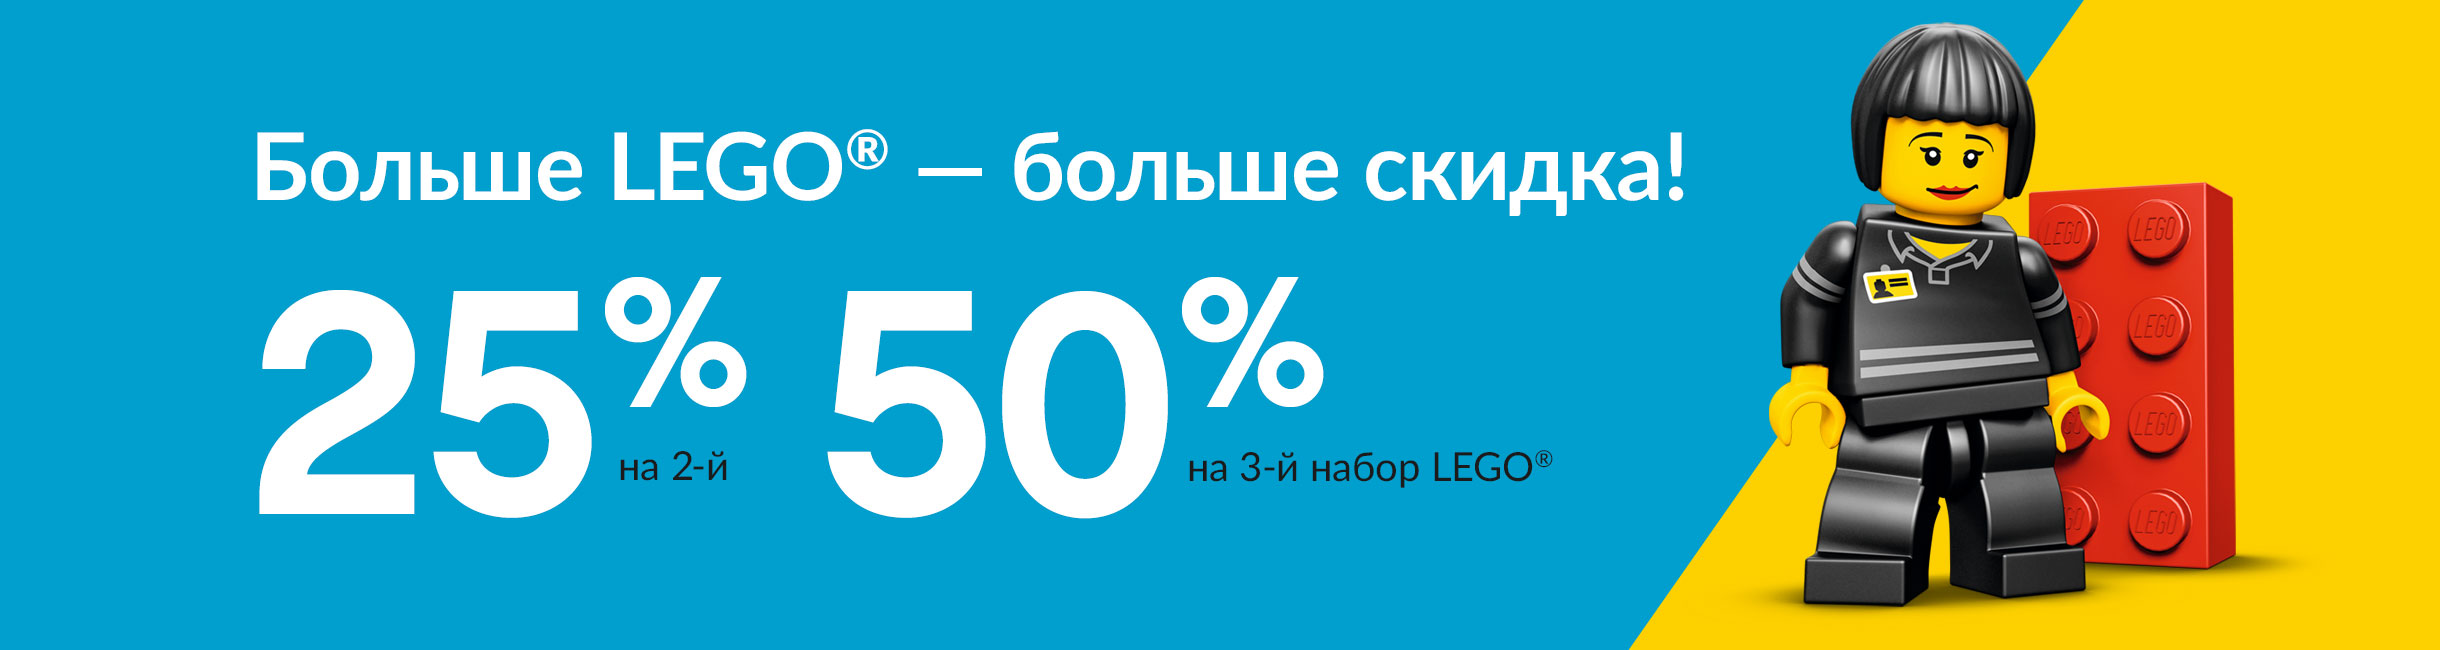 Рекламная акция Лего (LEGO) «Больше LEGO - больше скидка!»